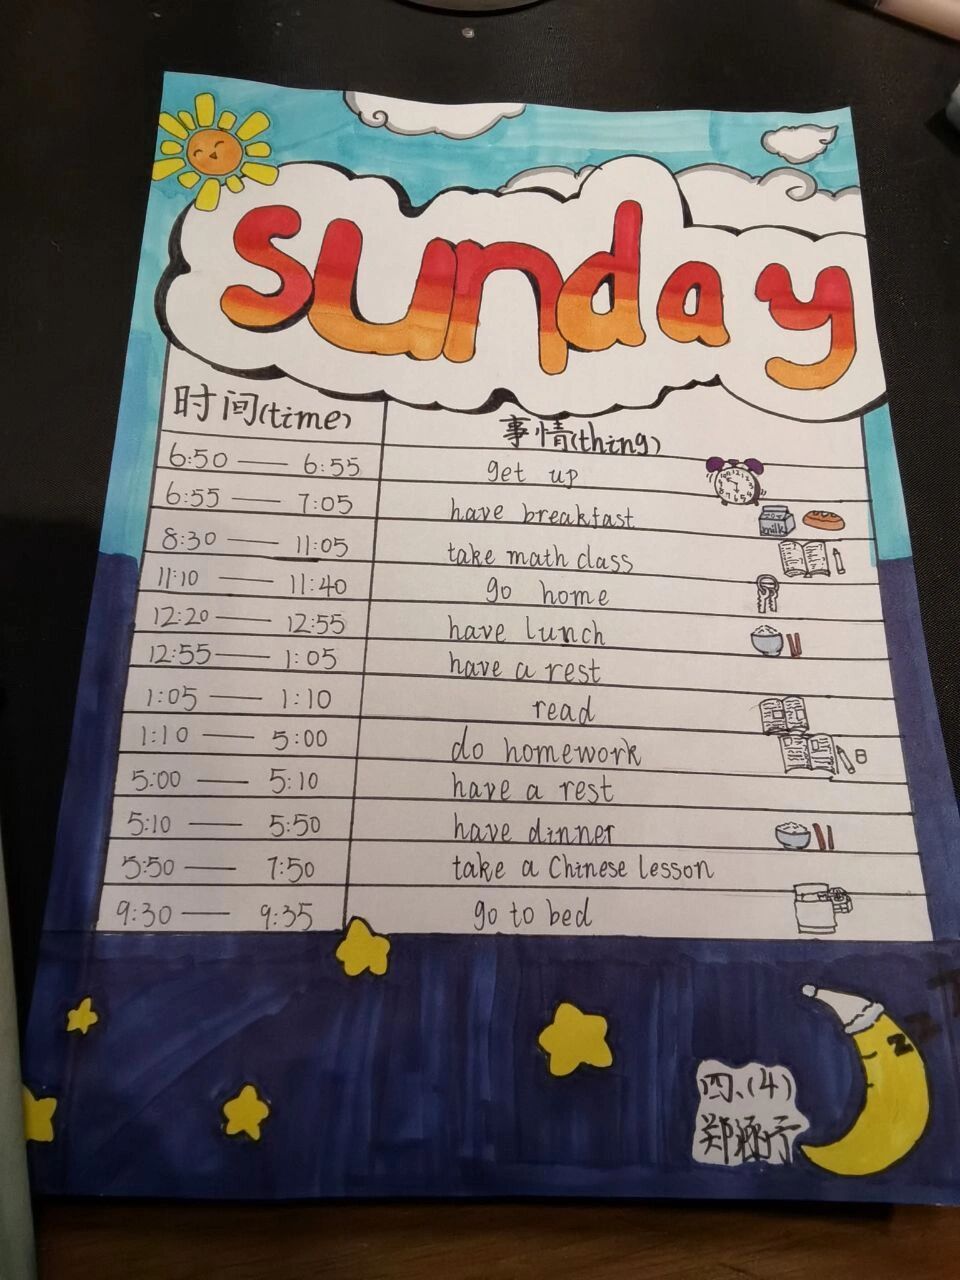 timetable 看看四年级同学的作息时间表吧